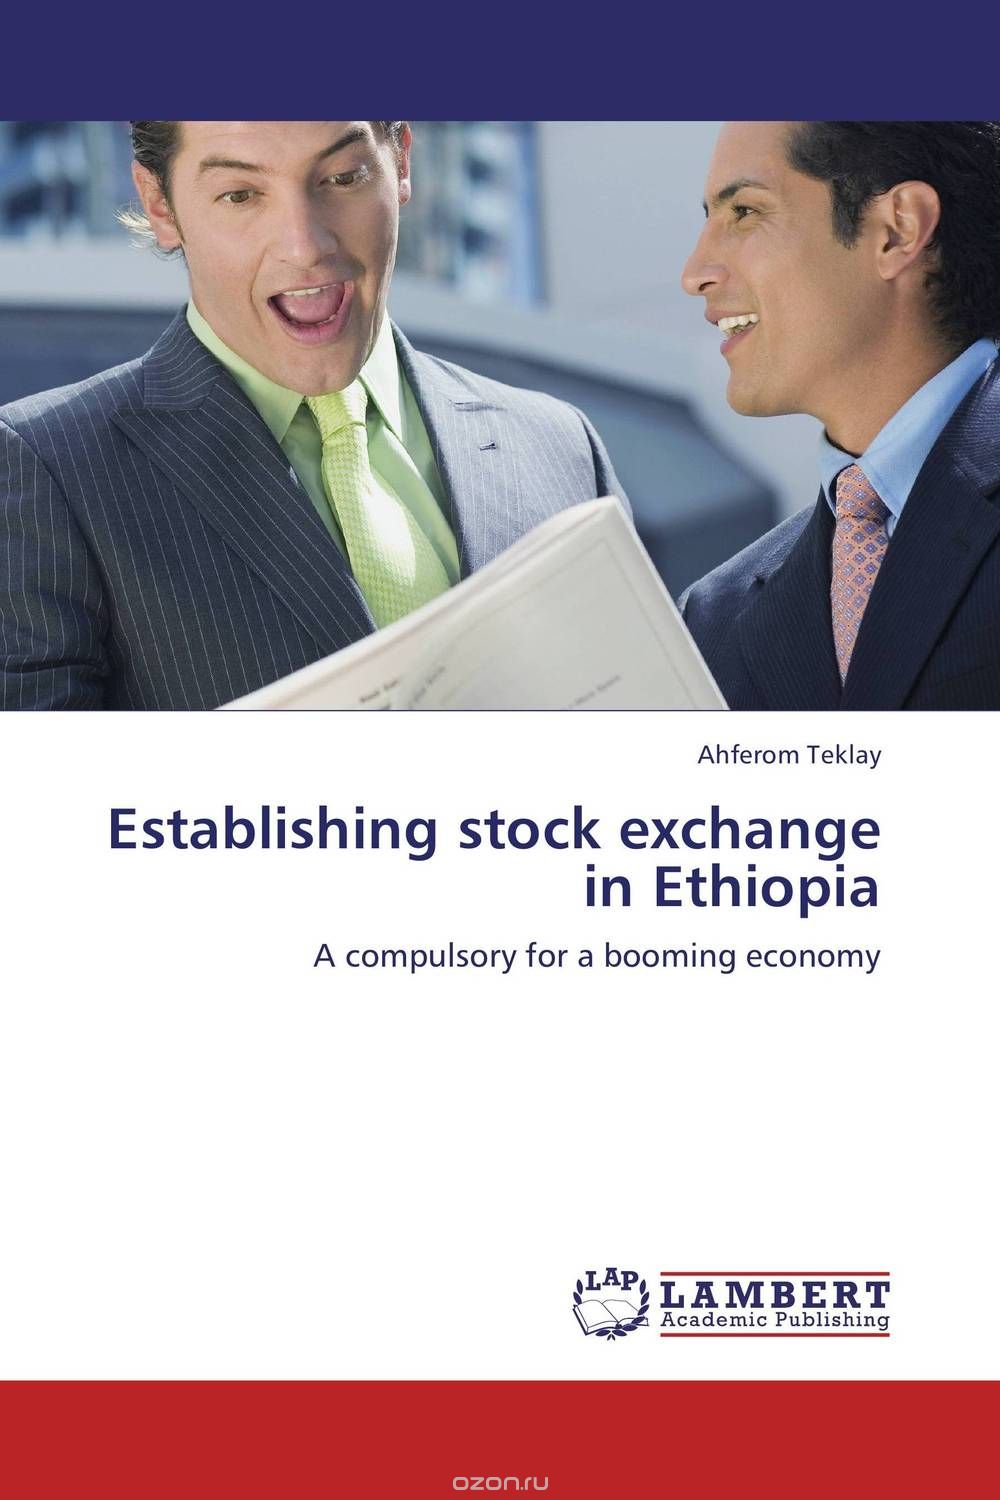 Скачать книгу "Establishing stock exchange in Ethiopia"